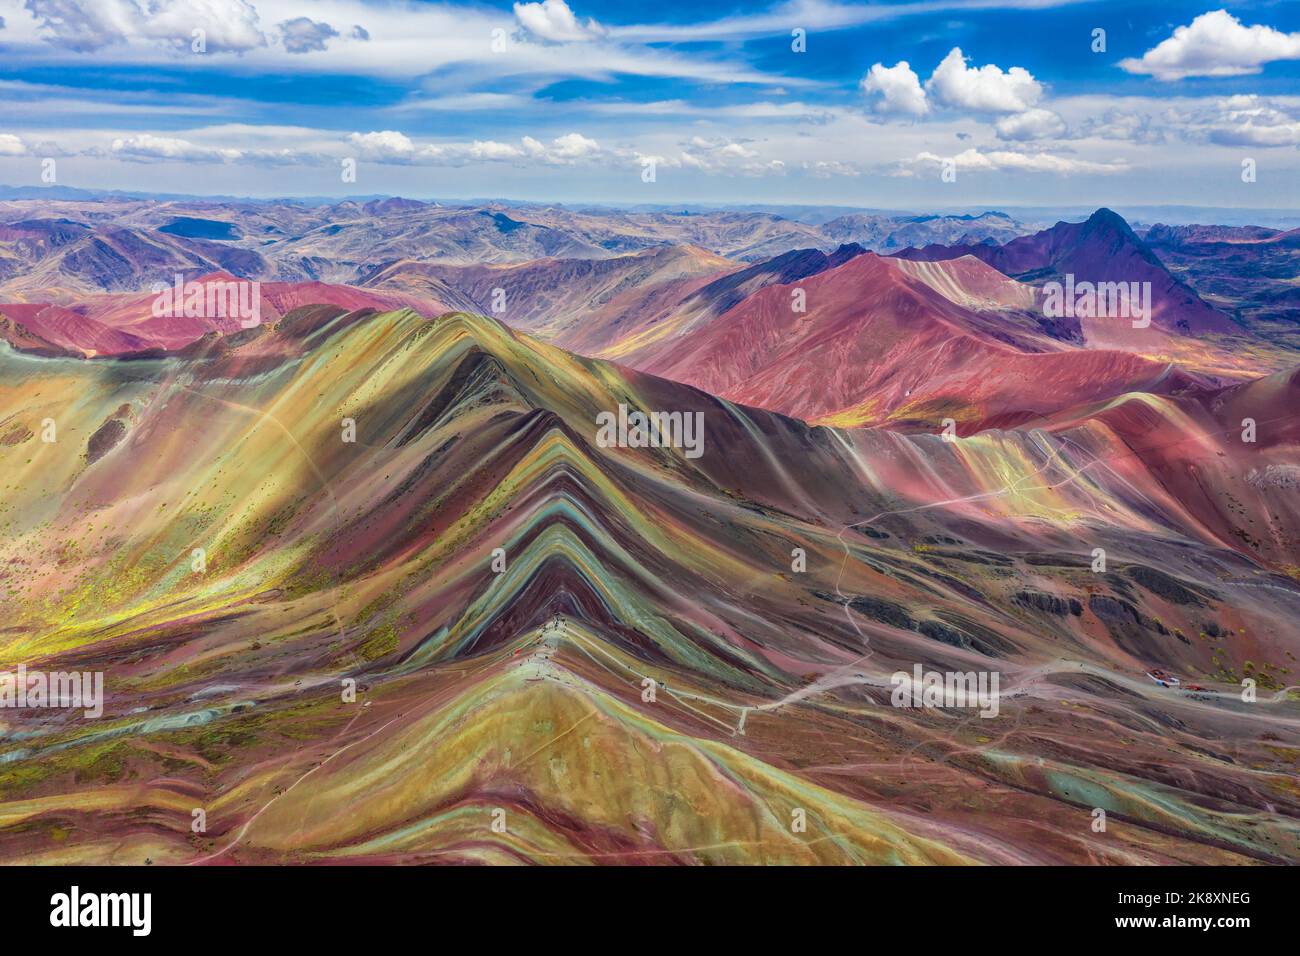 Luftaufnahme des gesamten Regenbogengebirges in Peru mit Vinicunca in der Mitte und dem Roten Tal im Hintergrund. Stockfoto